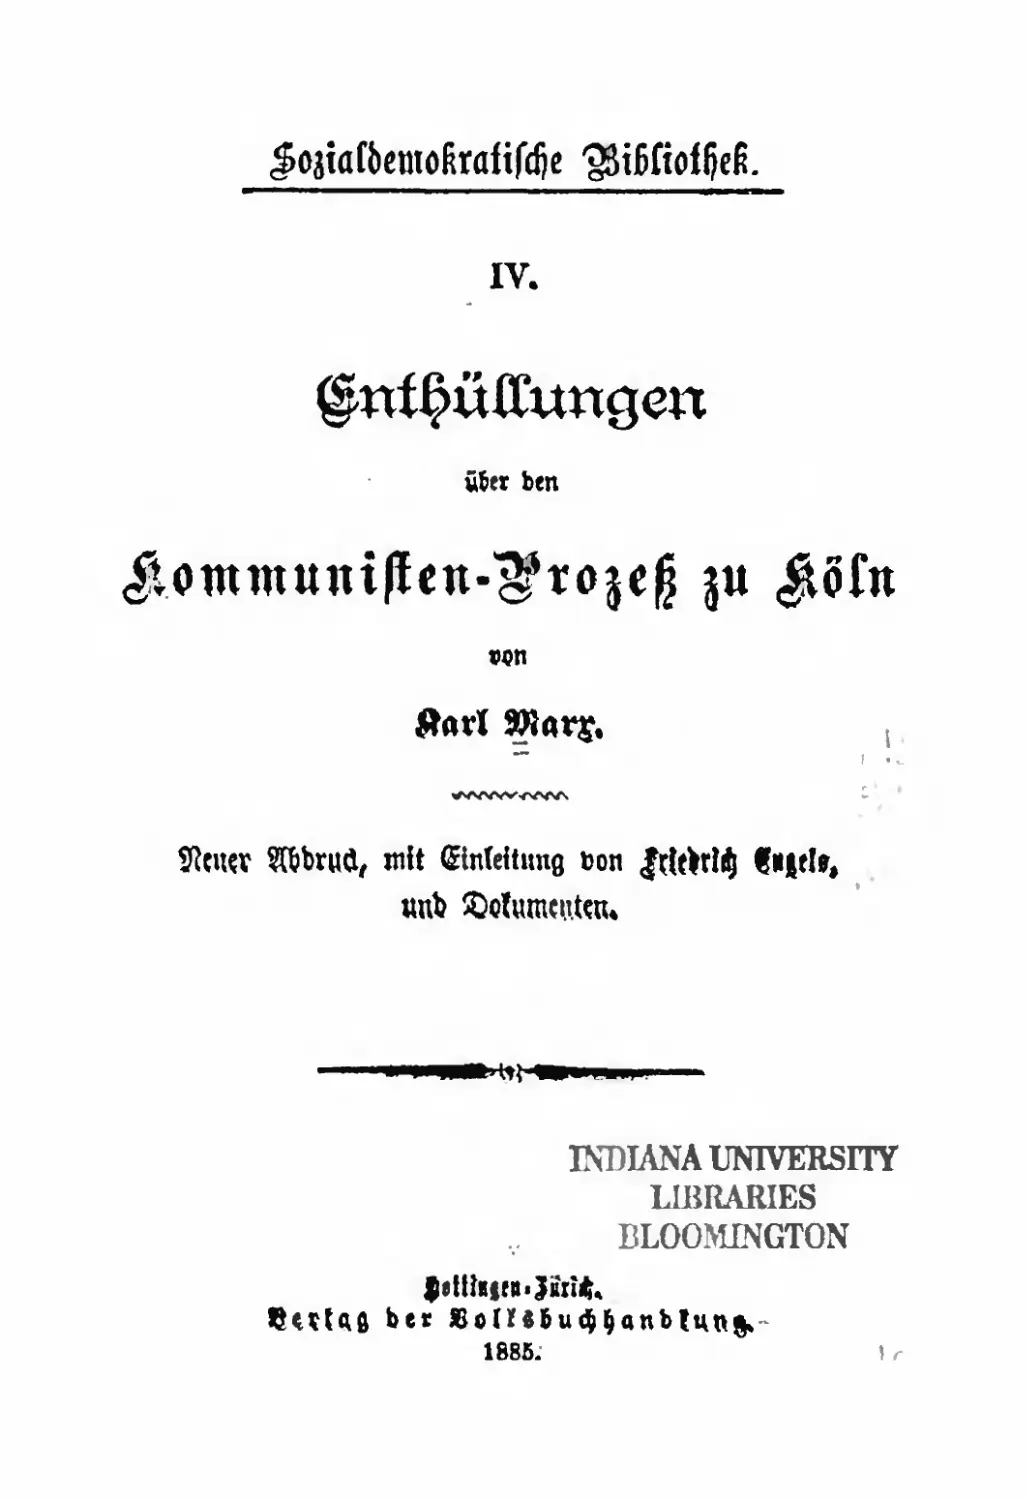 Обложка издания 1885 г.